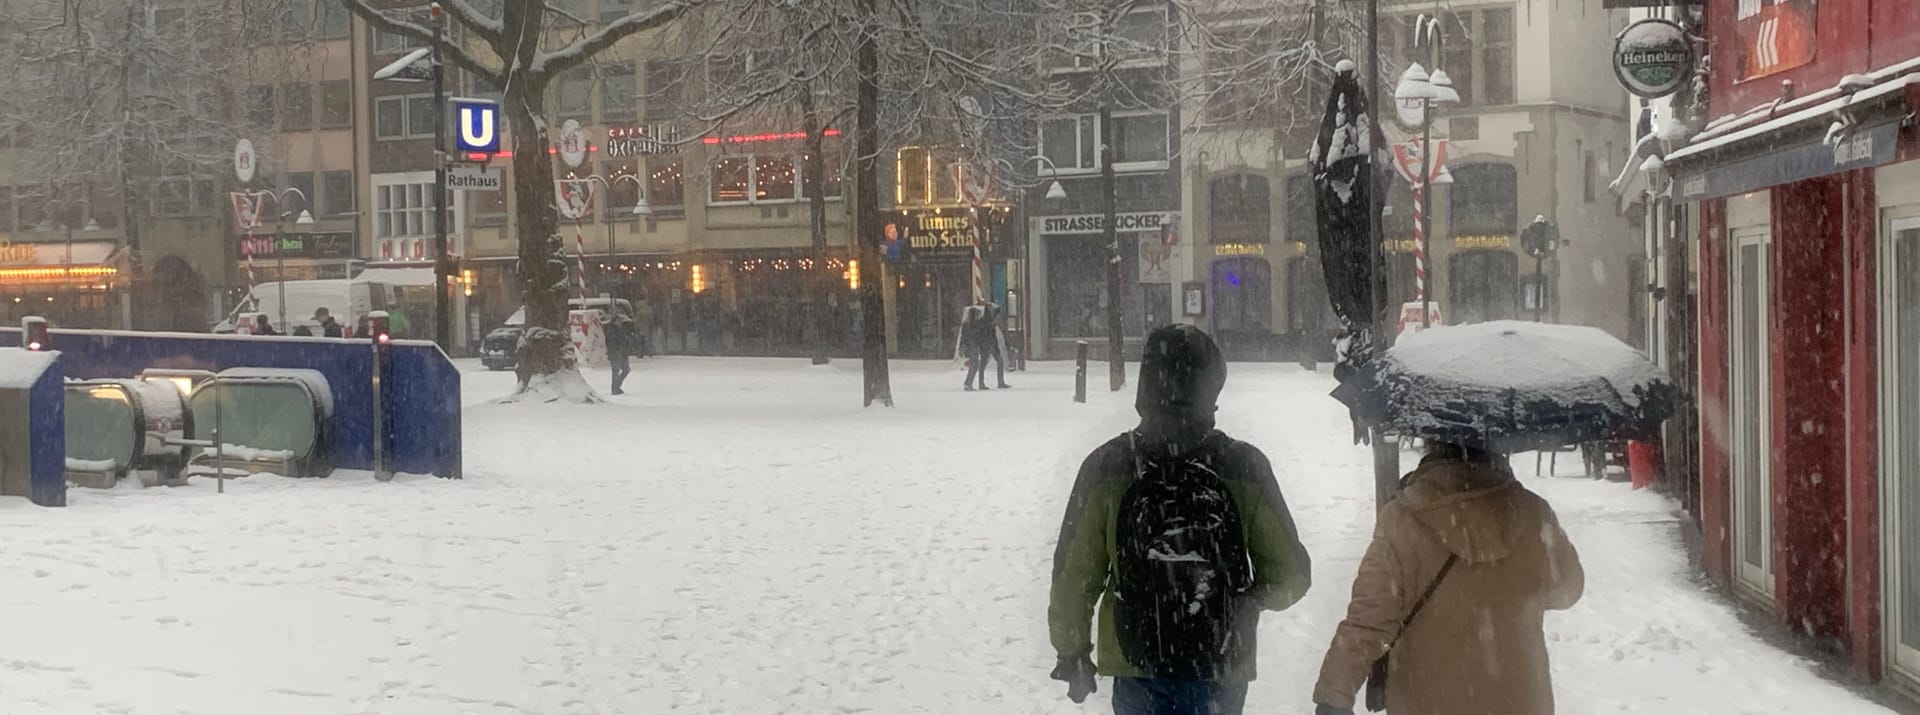 Auch der Rathausplatz ist mit Schnee bedeckt. Manch ein Spaziergänger hat sicherheitshalber einen Regenschirm dabei.